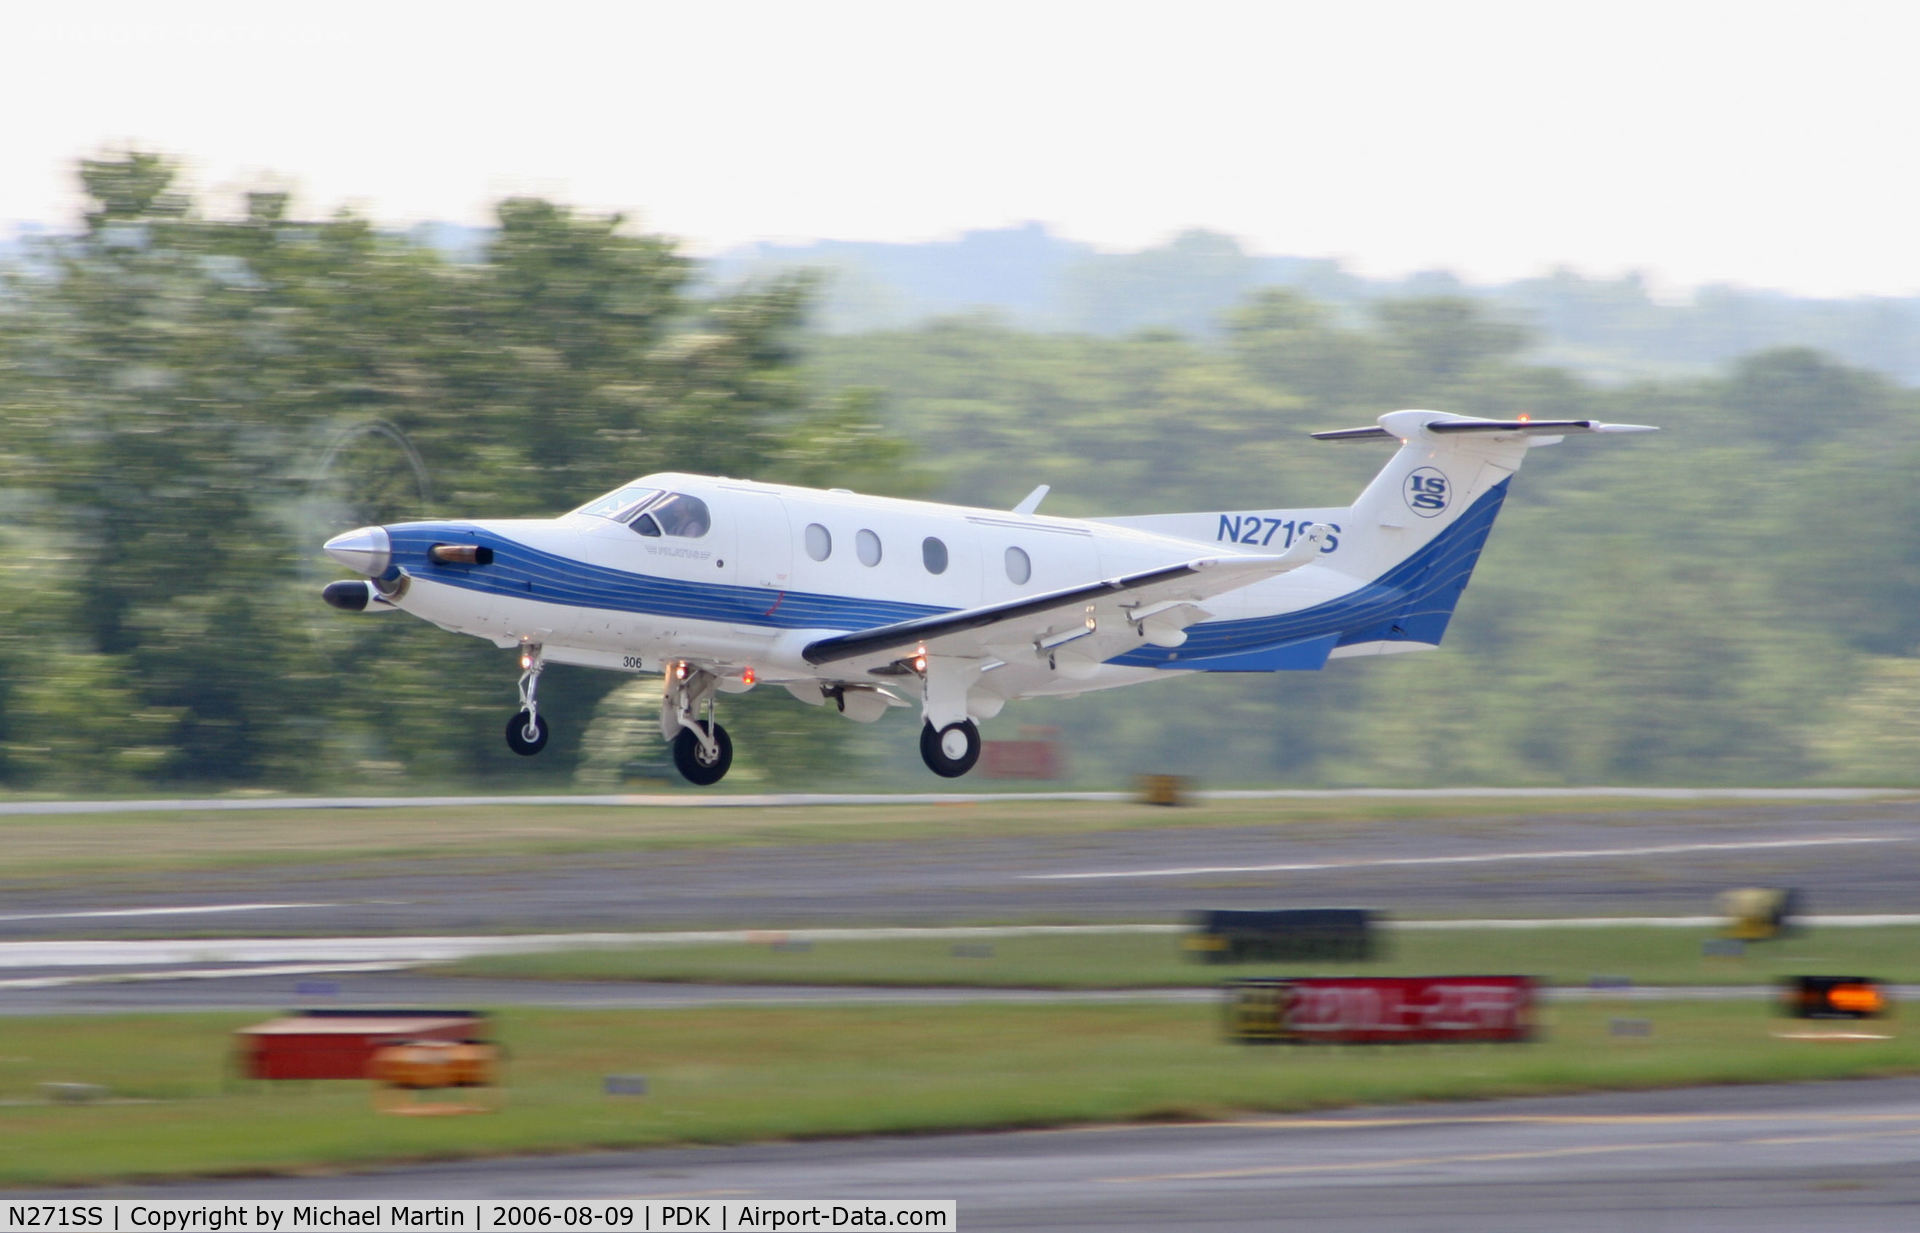 N271SS, 2000 Pilatus PC-12/45 C/N 306, Departing Runway 2R